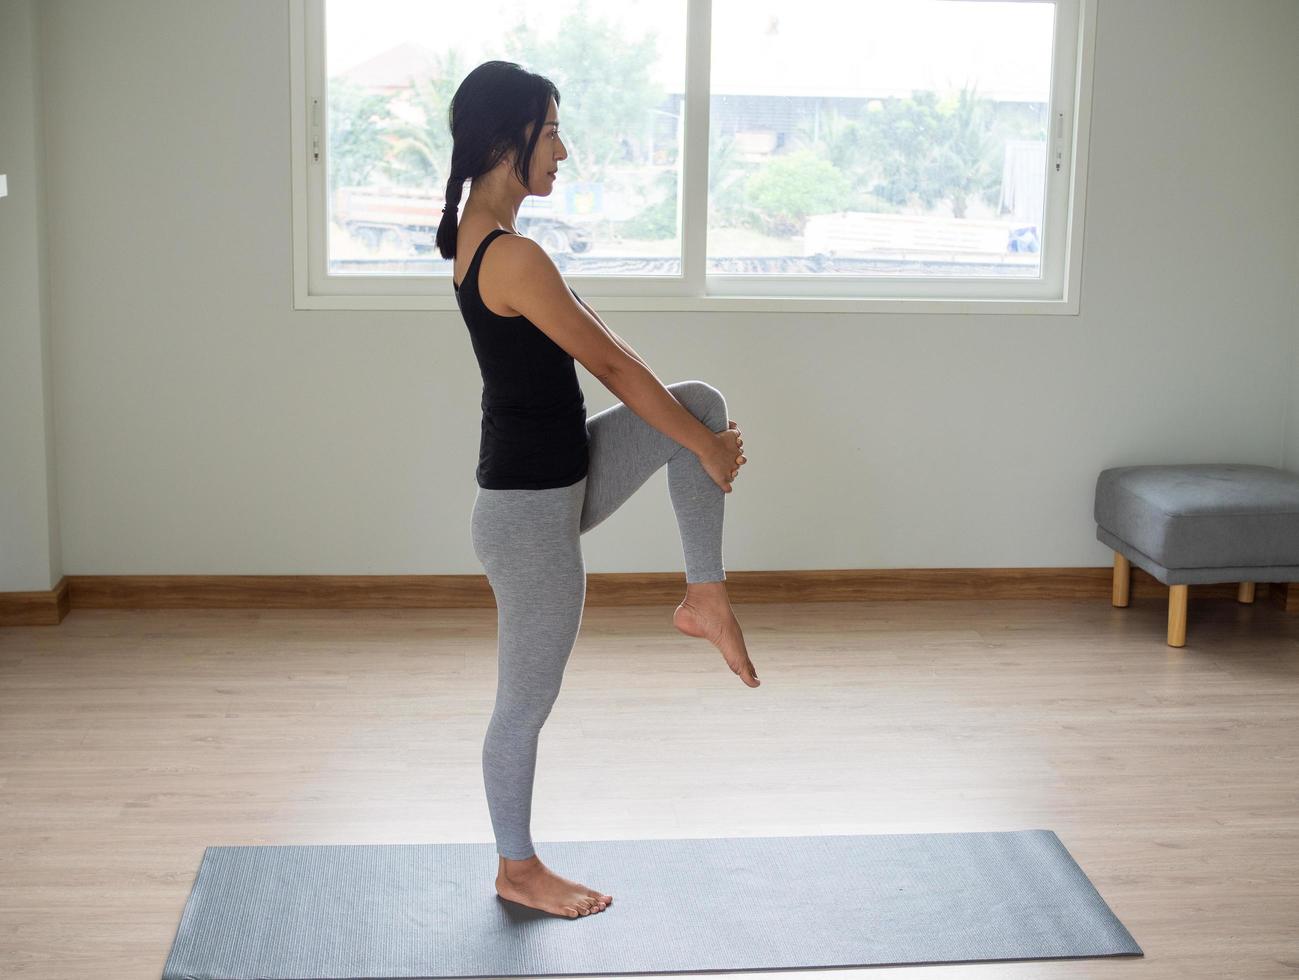 le femmes exercice par levage le jambes, les genoux en haut un par un, en portant le les genoux fermement. supporter tout droit retour et prise. est une relaxant yoga entraine toi à maison. photo